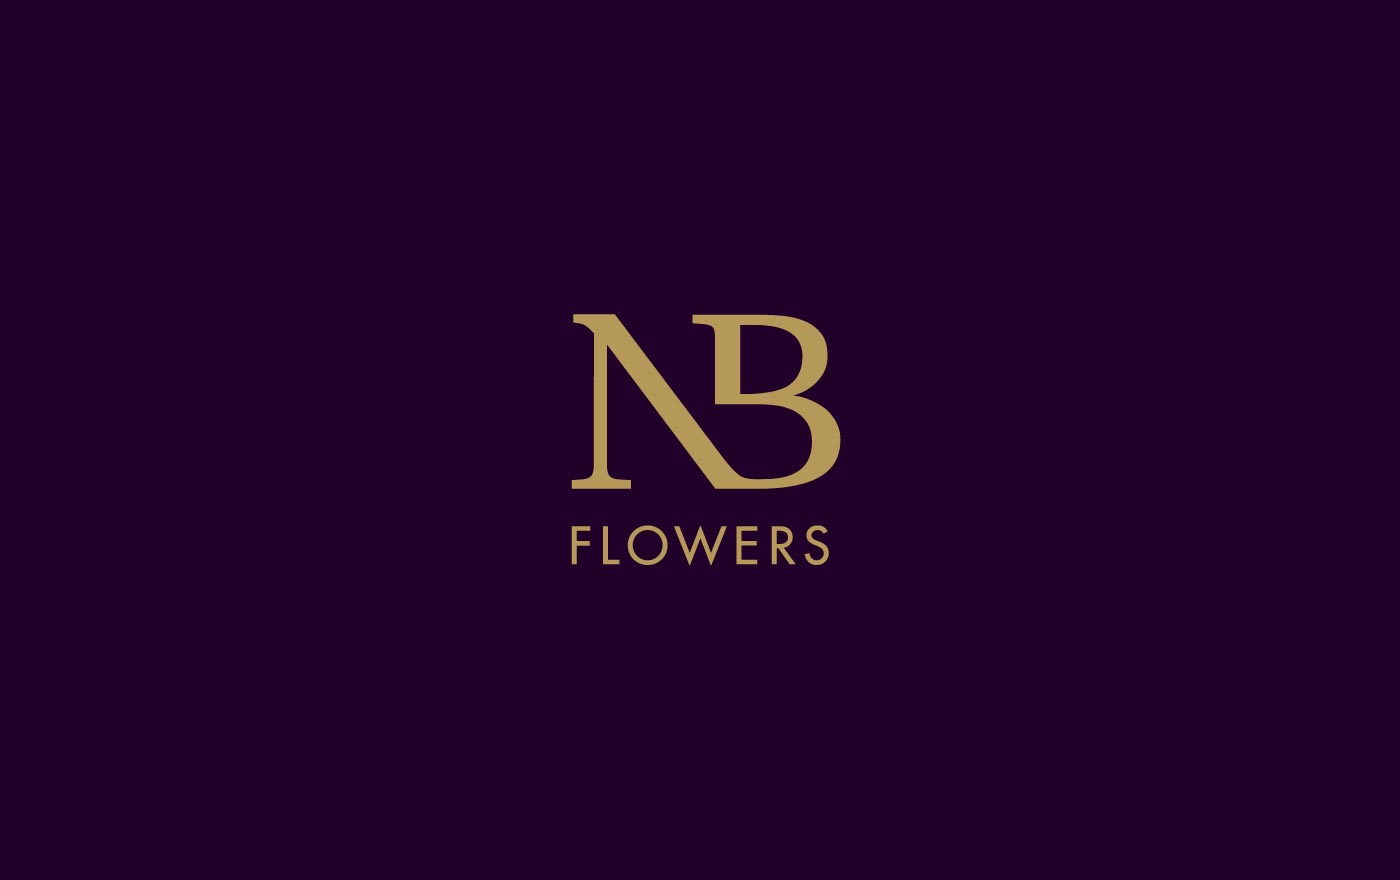 N b. NB буквы. NB logo Design. Логотип букв НБ. NB инициалы.